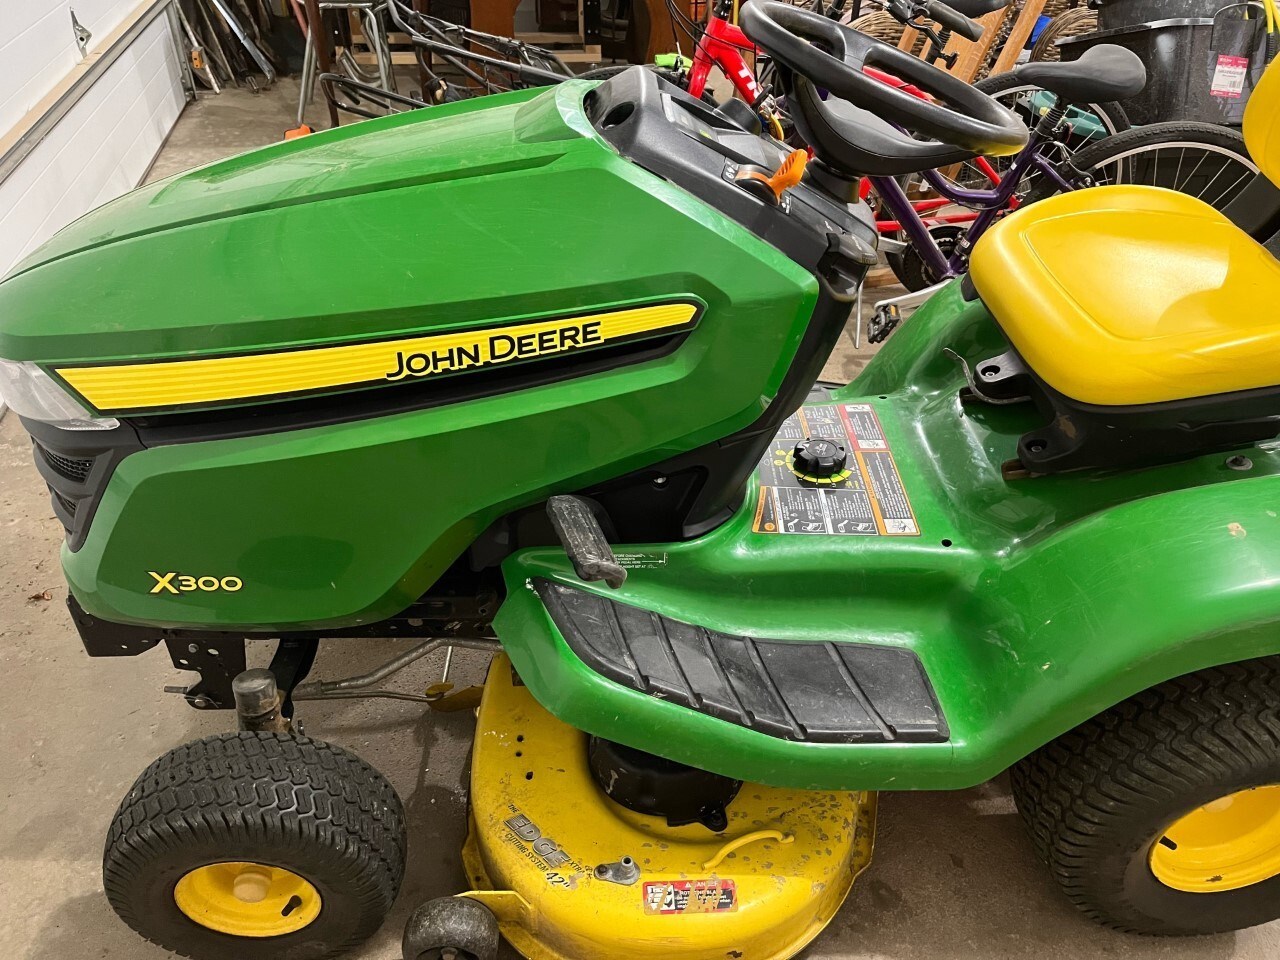 2015 John Deere X300 Lawn Mower For Sale